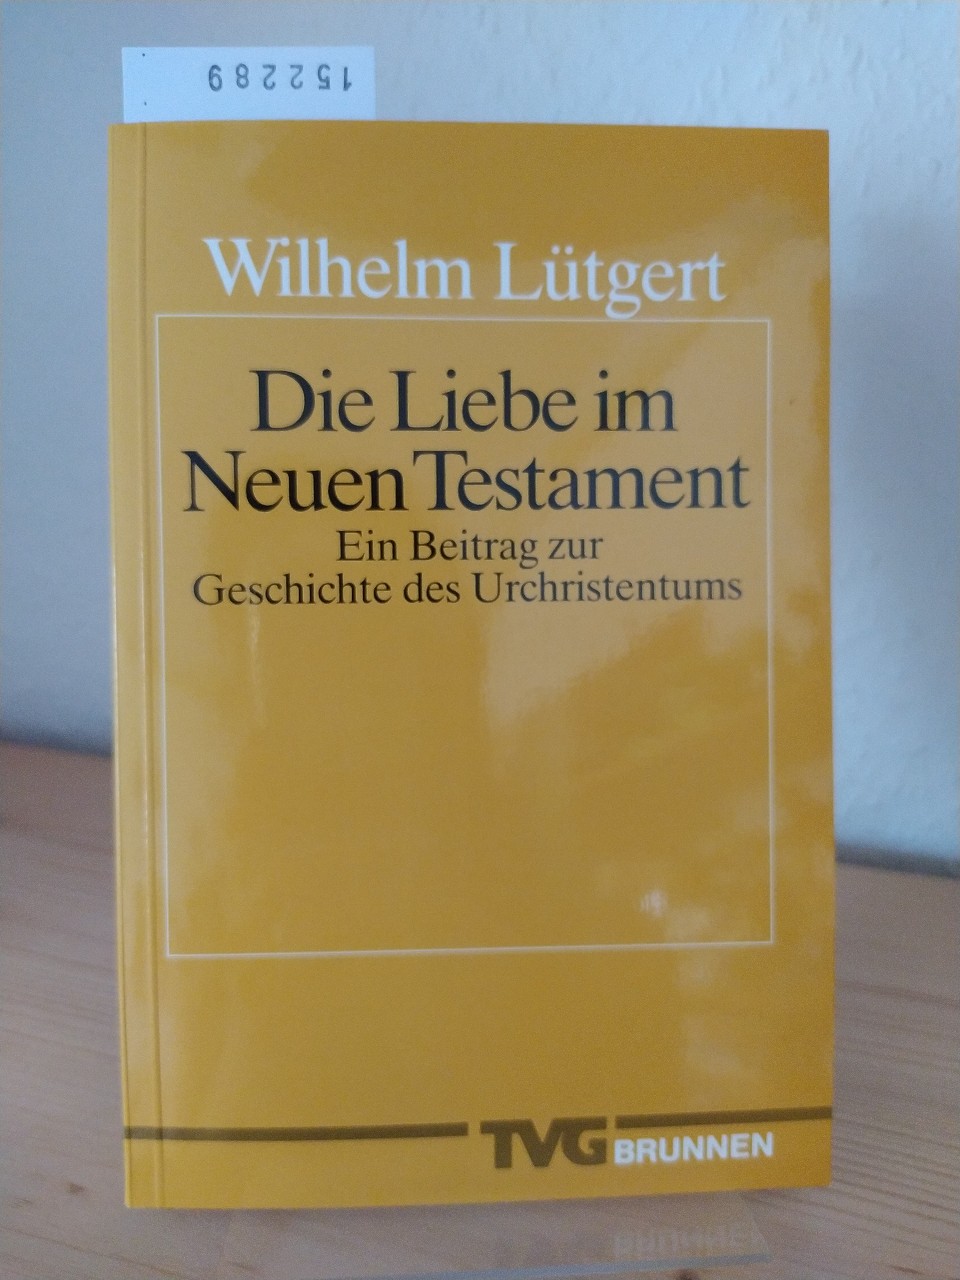 Die Liebe im Neuen Testament. Ein Beitrag zur Geschichte des Urchristentums. [Von Wilhelm Lütgert]. - Lütgert, Wilhelm